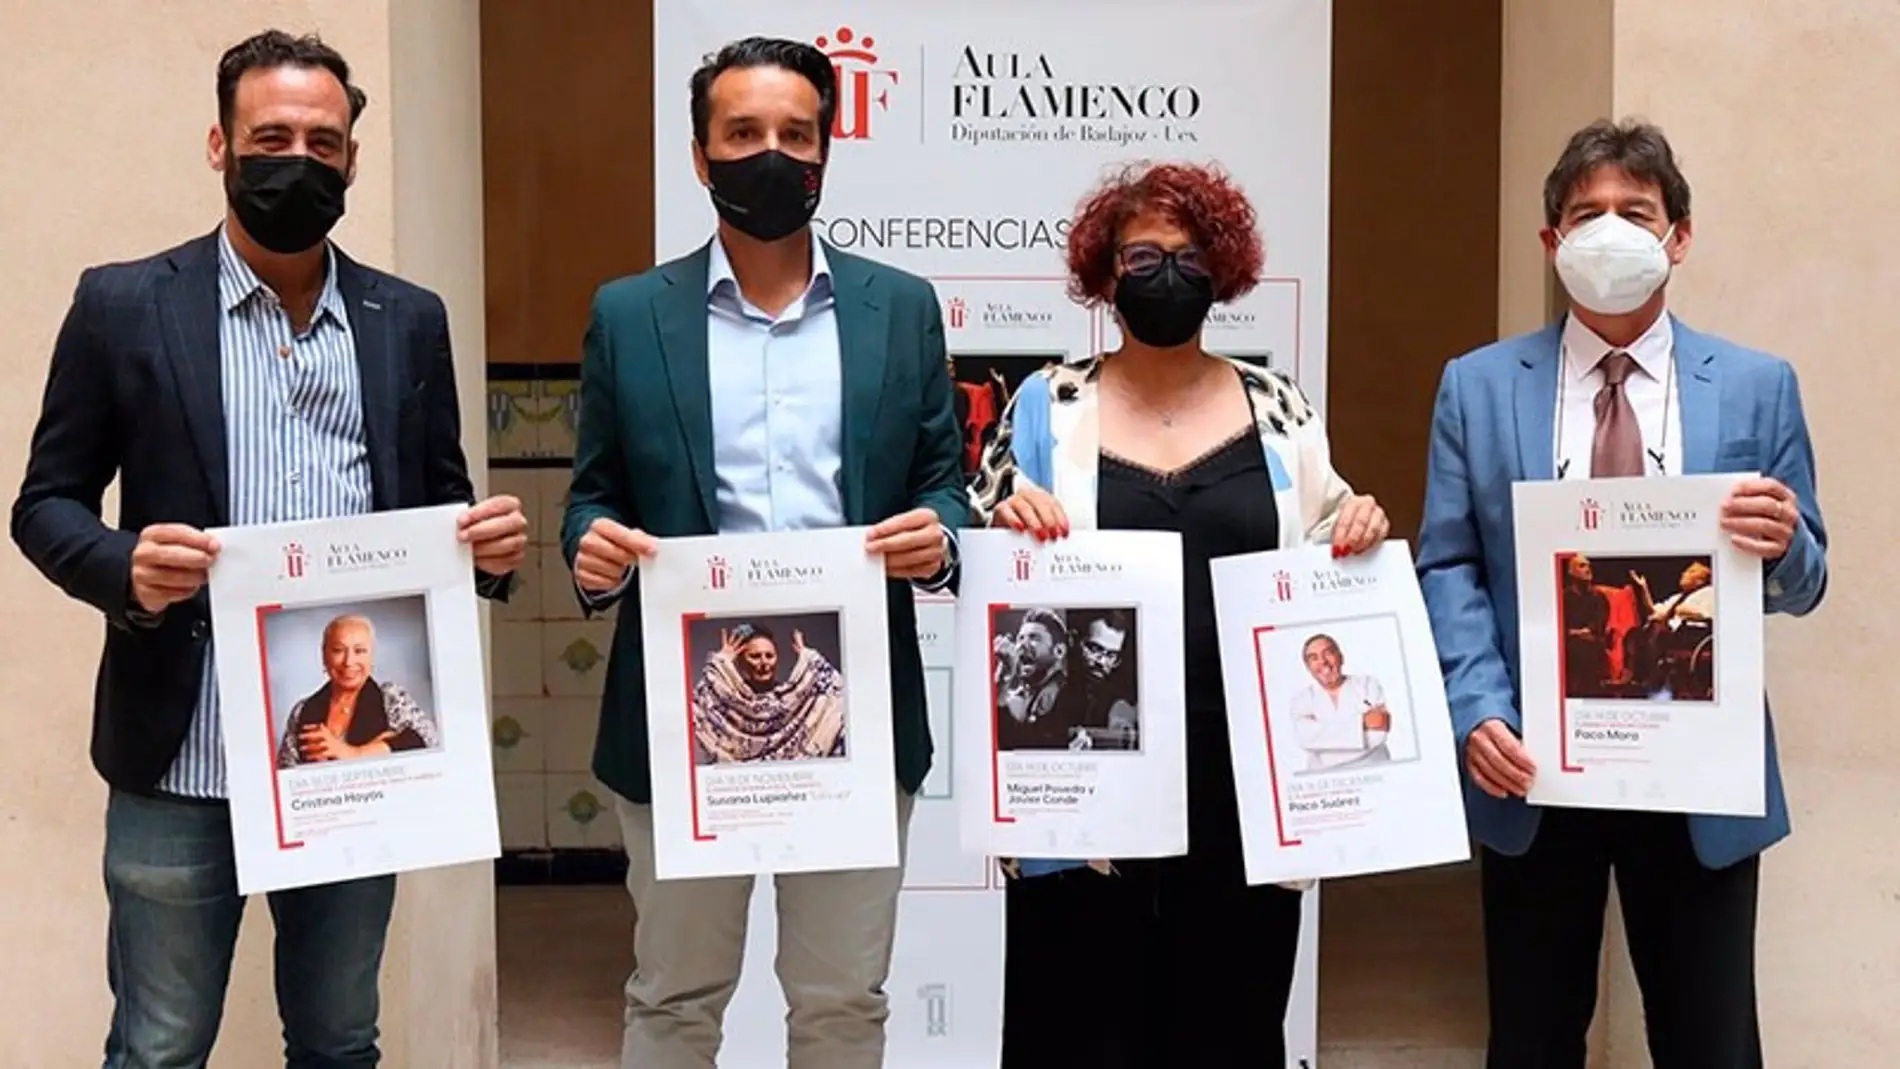 Miguel Poveda y Javier Conde recibirán este jueves los premios del Aula de Flamenco de Diputación de Badajoz y UEx